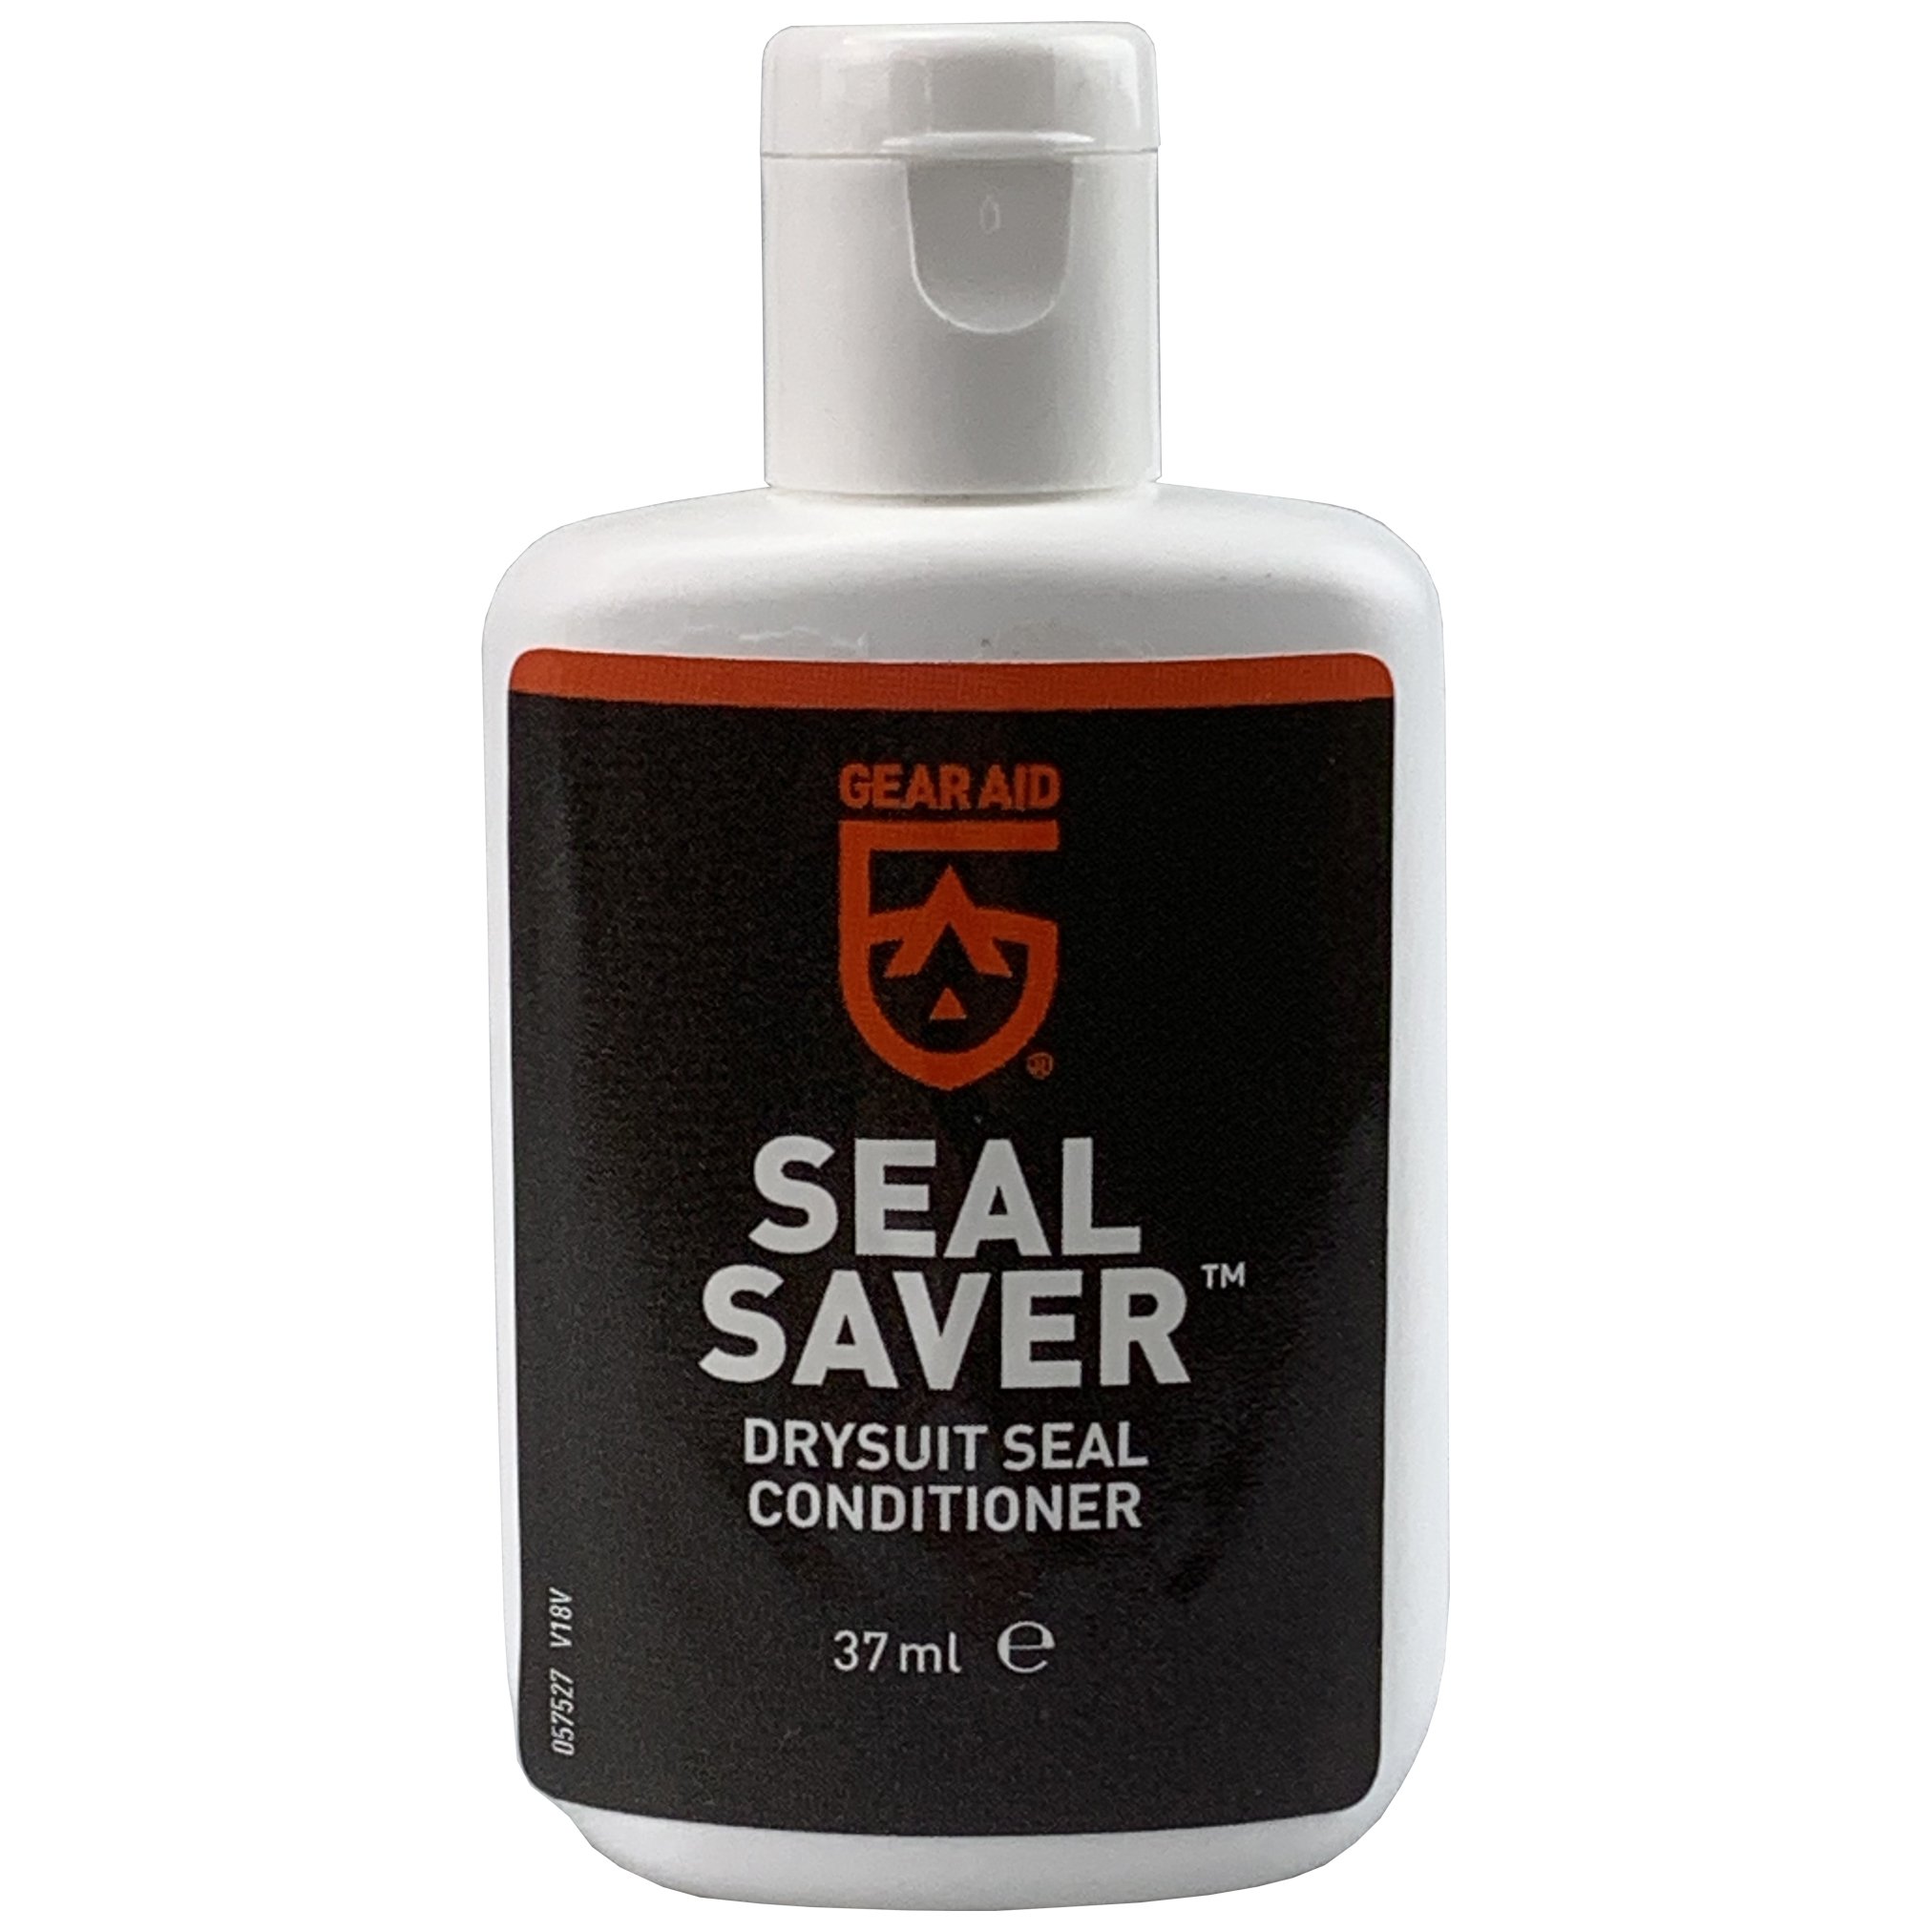 Seal Saver thumbnail